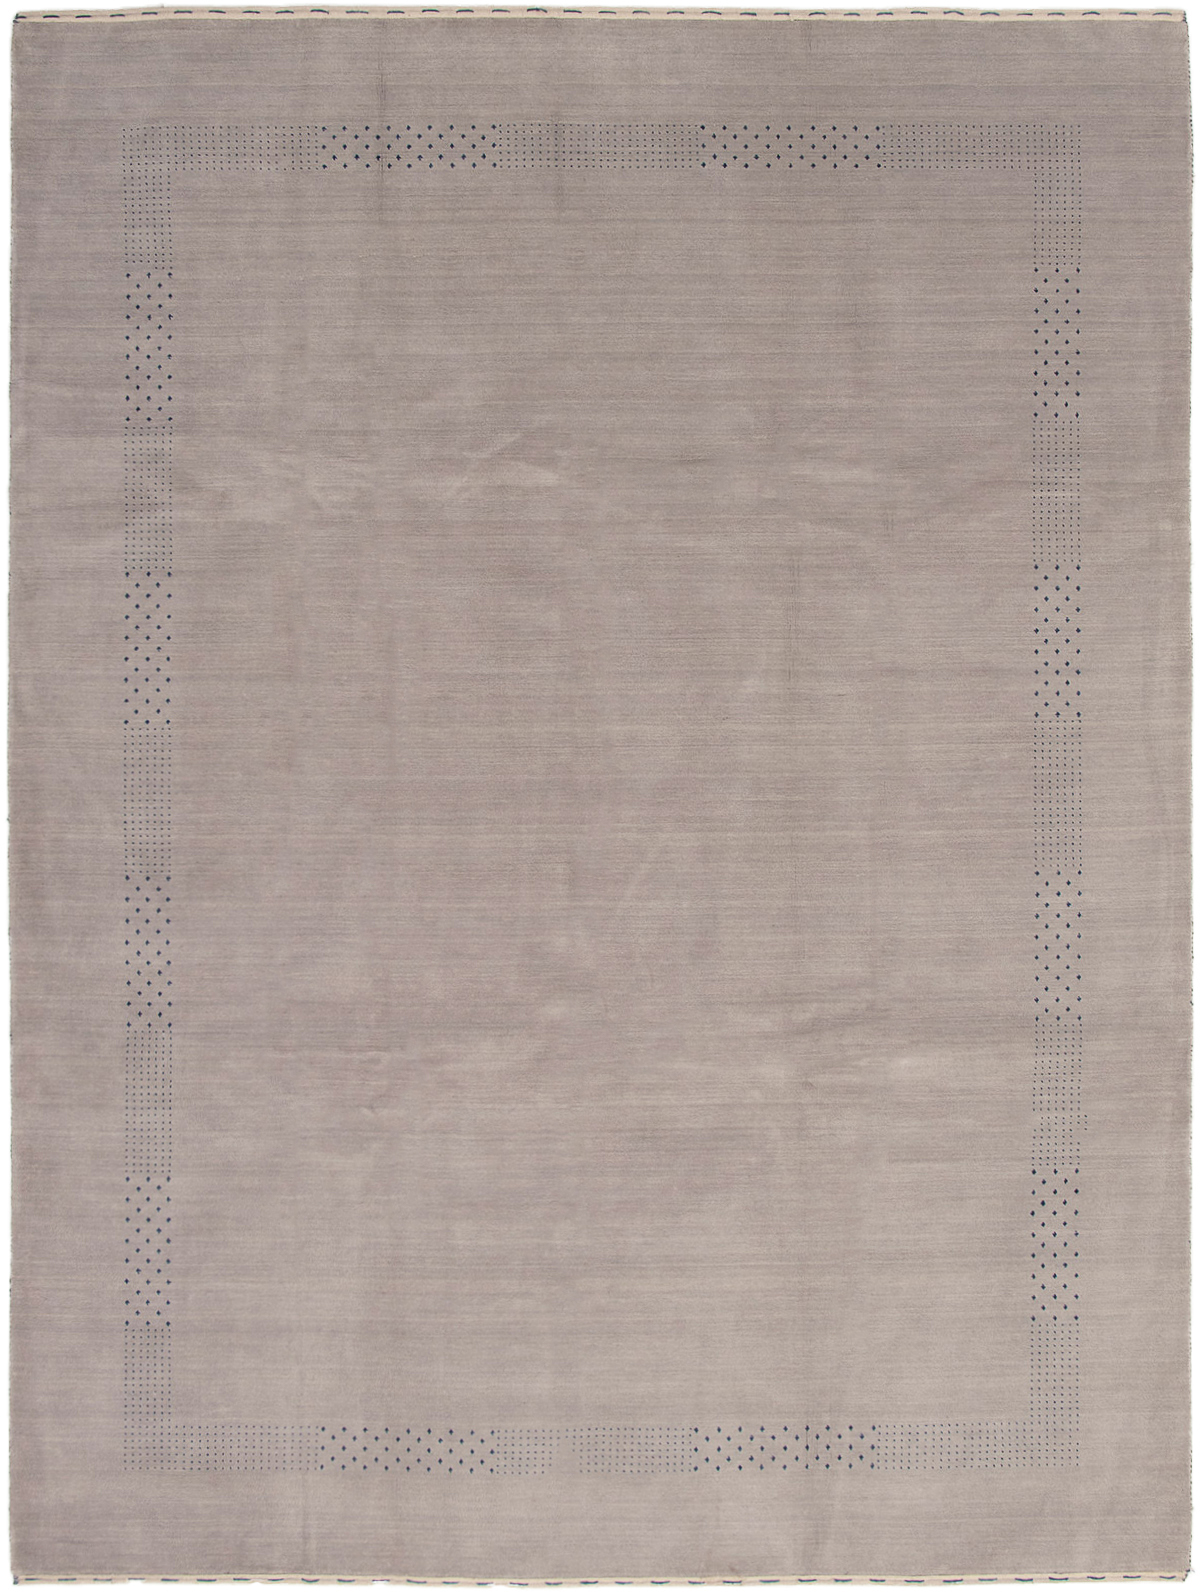 Hand-knotted Kashkuli Gabbeh Light Grey Wool Rug 9'2" x 12'1" Size: 9'2" x 12'1"  